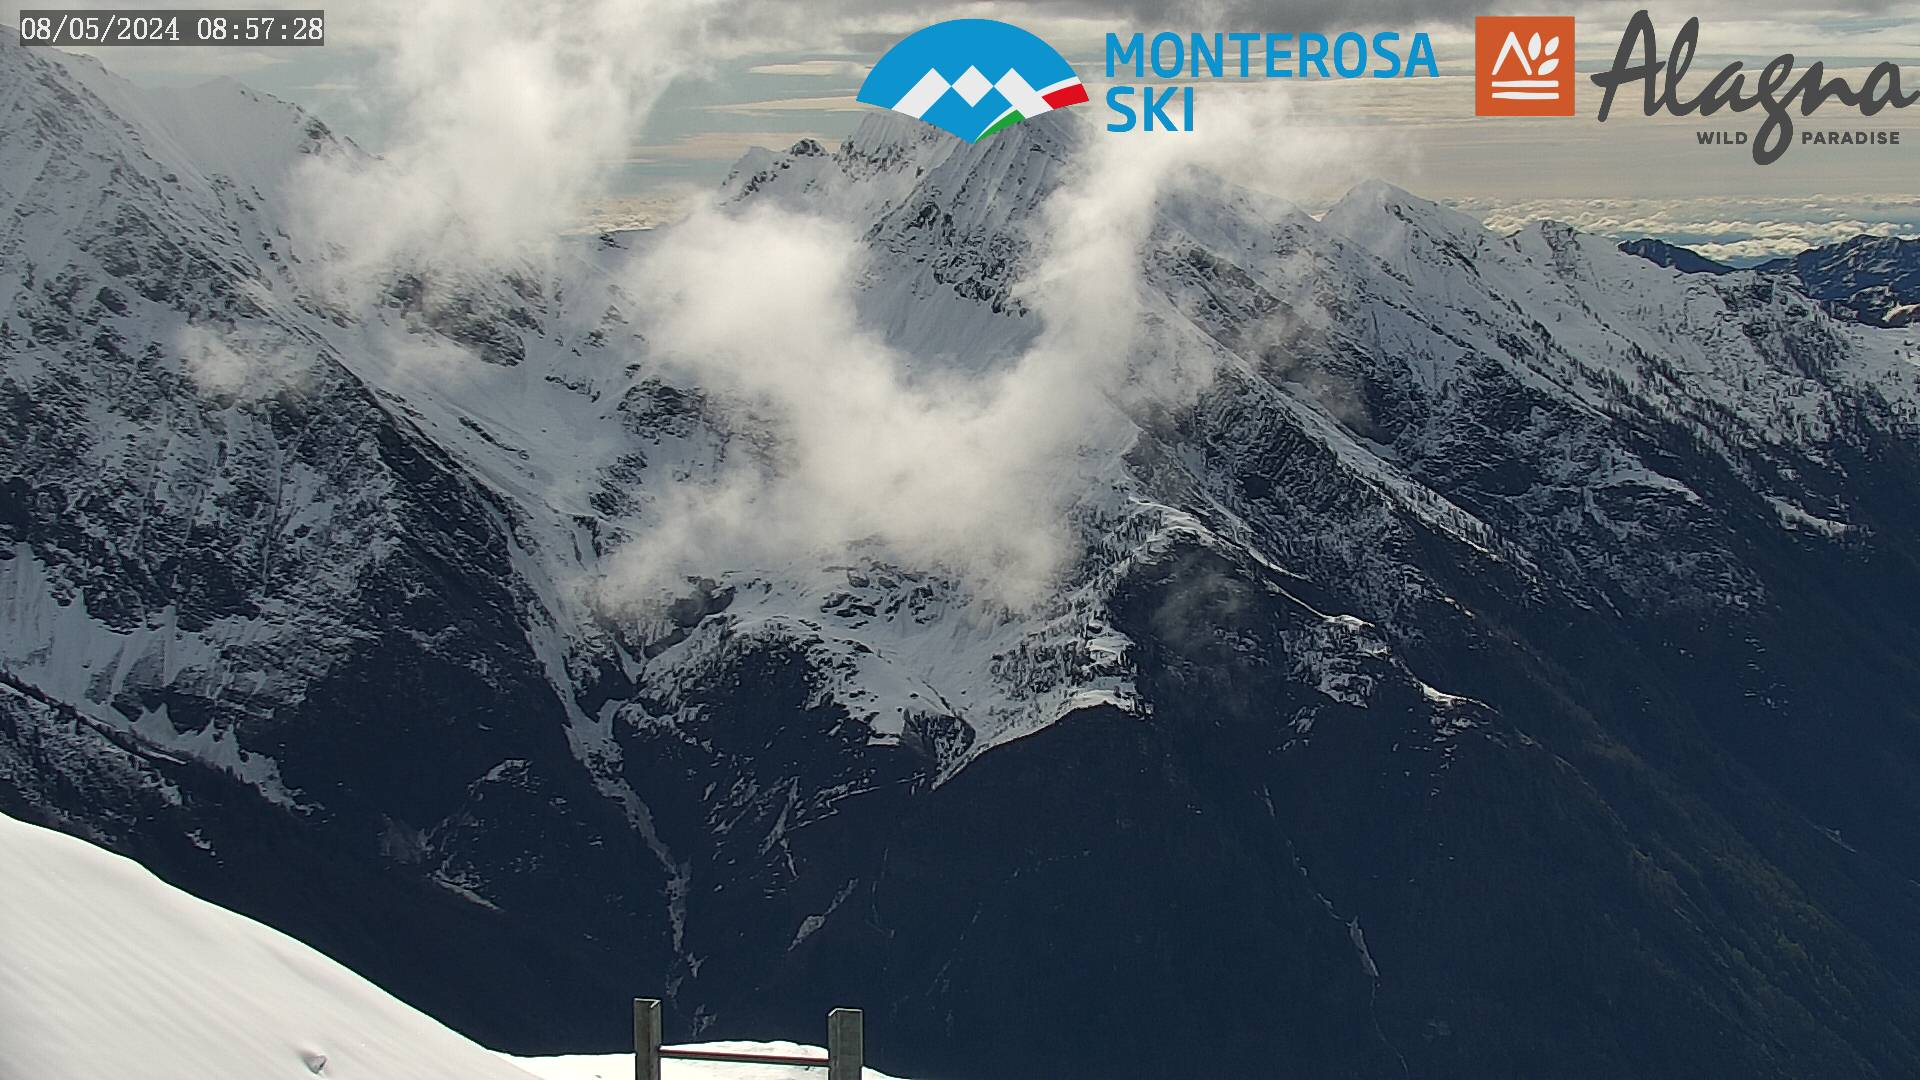 Monterosa-ski Gressoney La Trinité - Valsesia